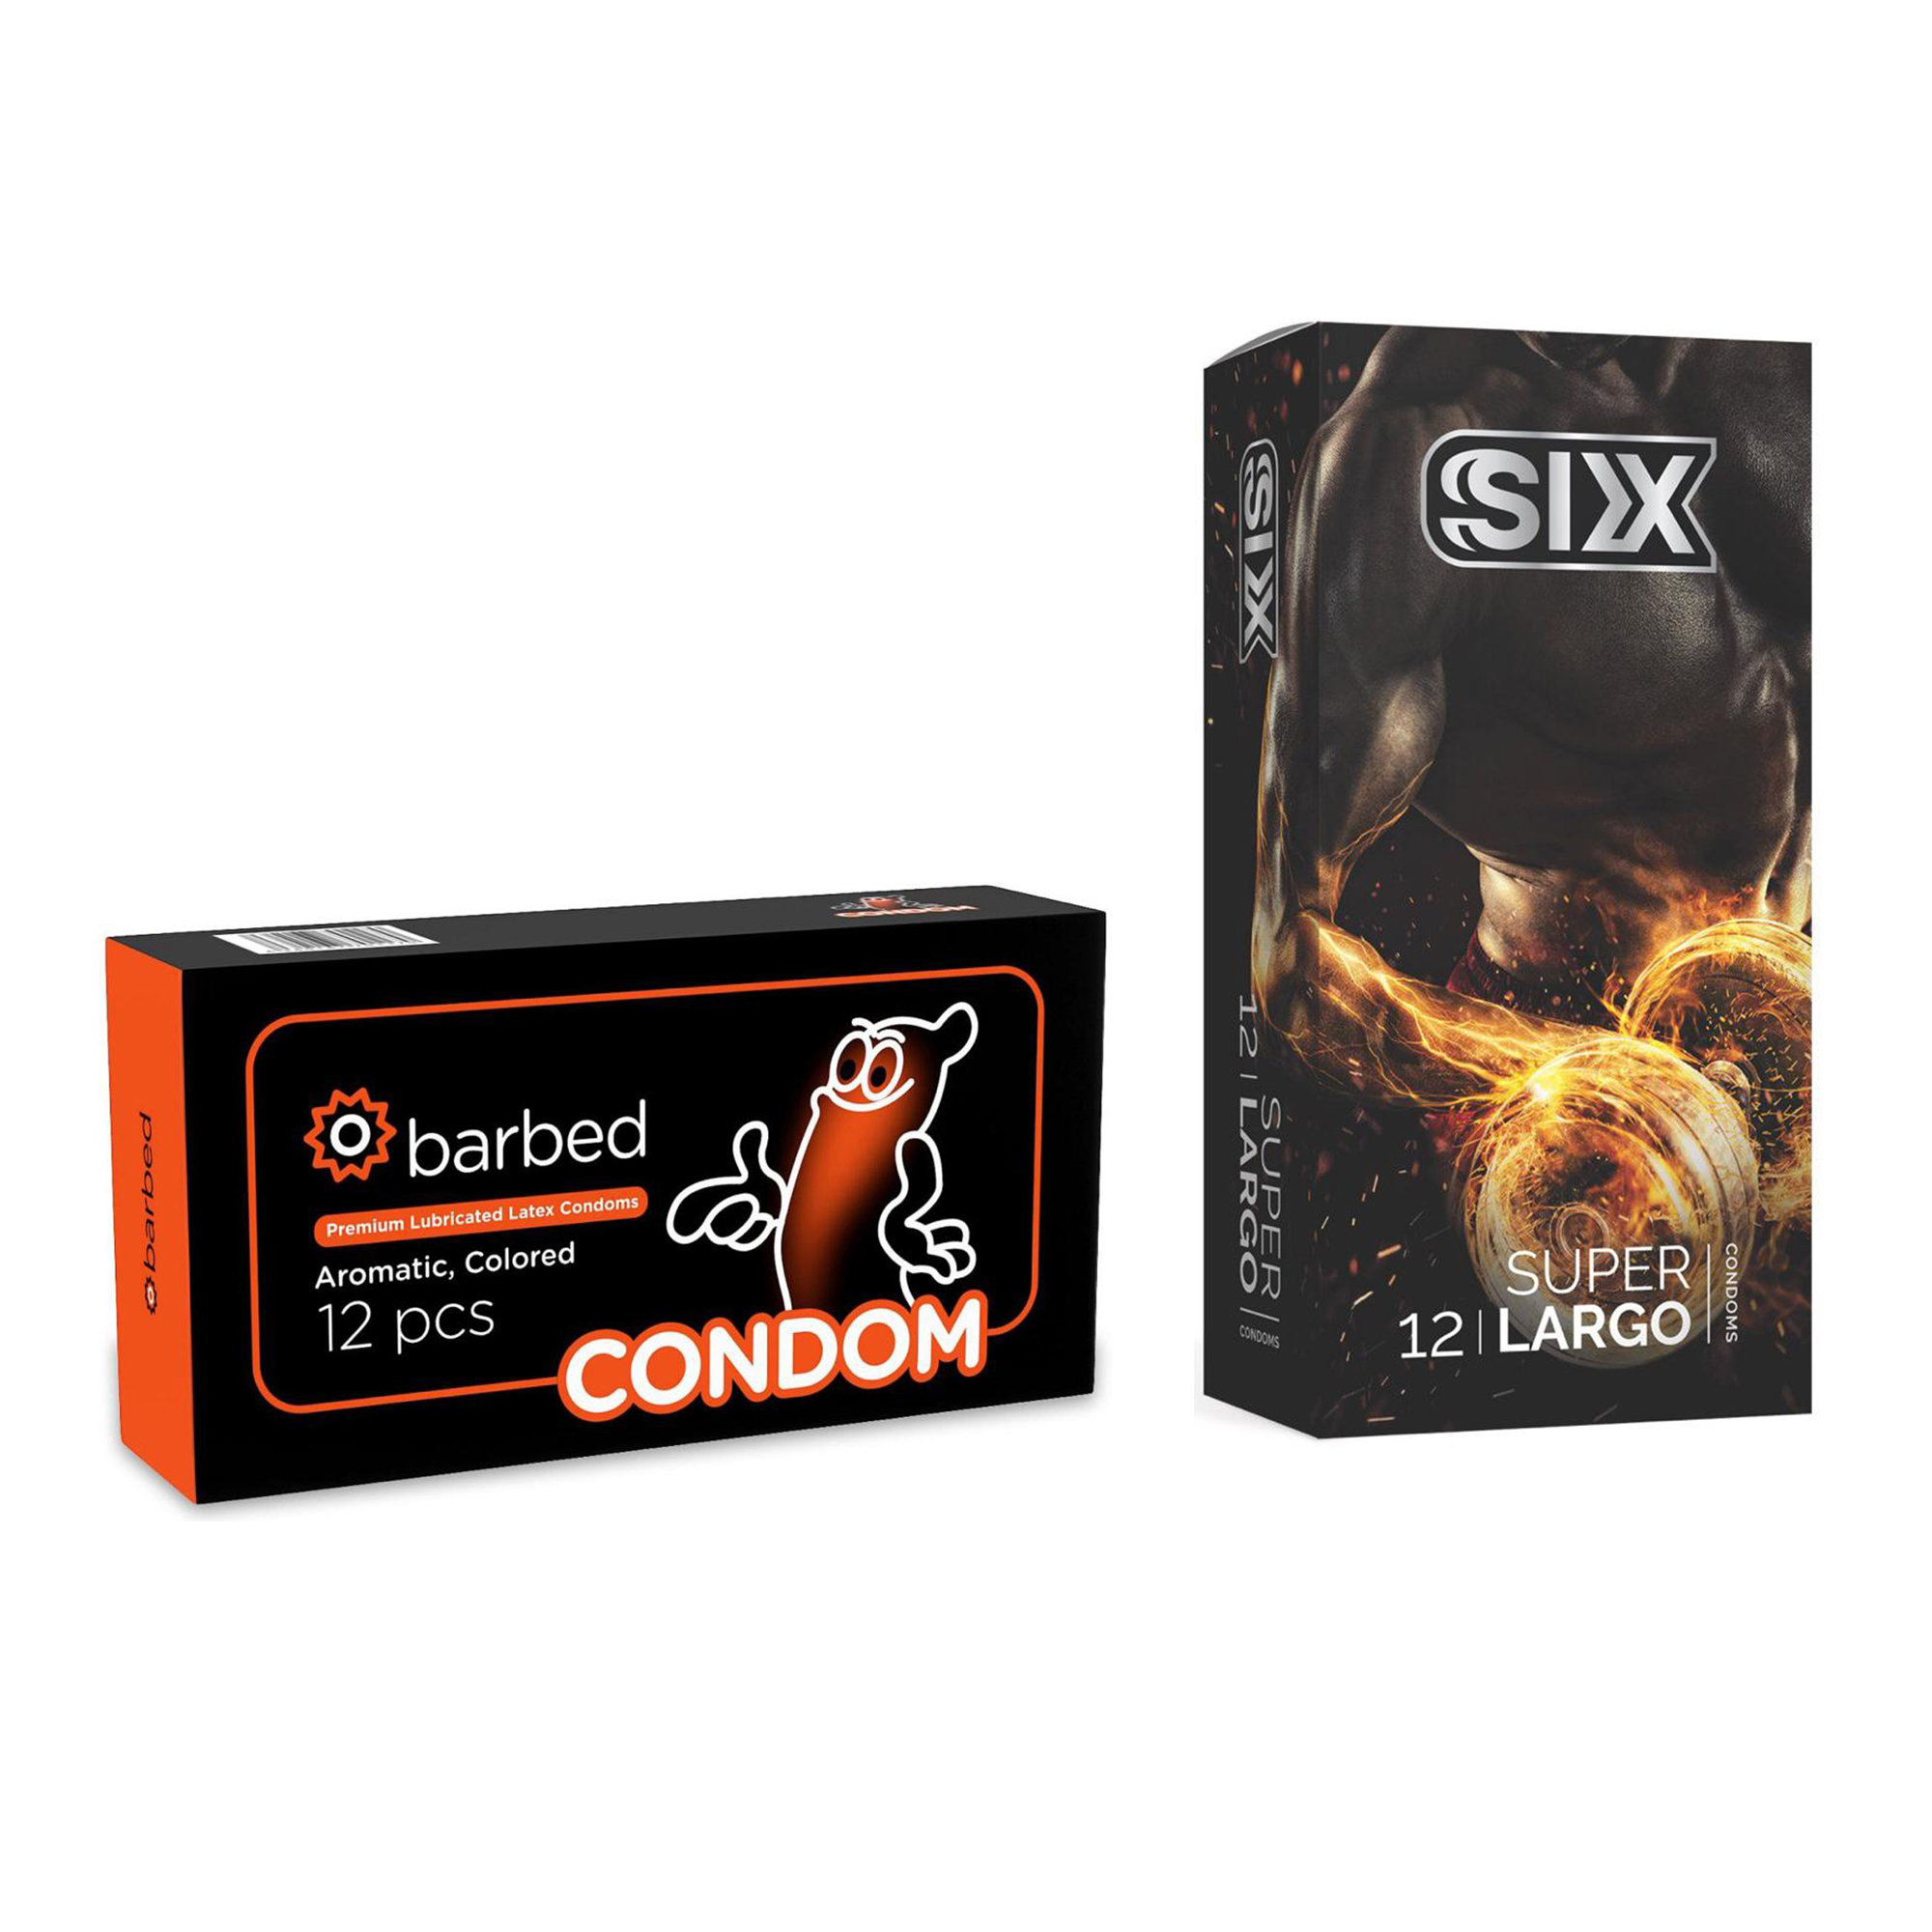 کاندوم سیکس مدل Super Largo بسته 12 عددی به همراه کاندوم کاندوم مدل Barbed بسته 12 عددی